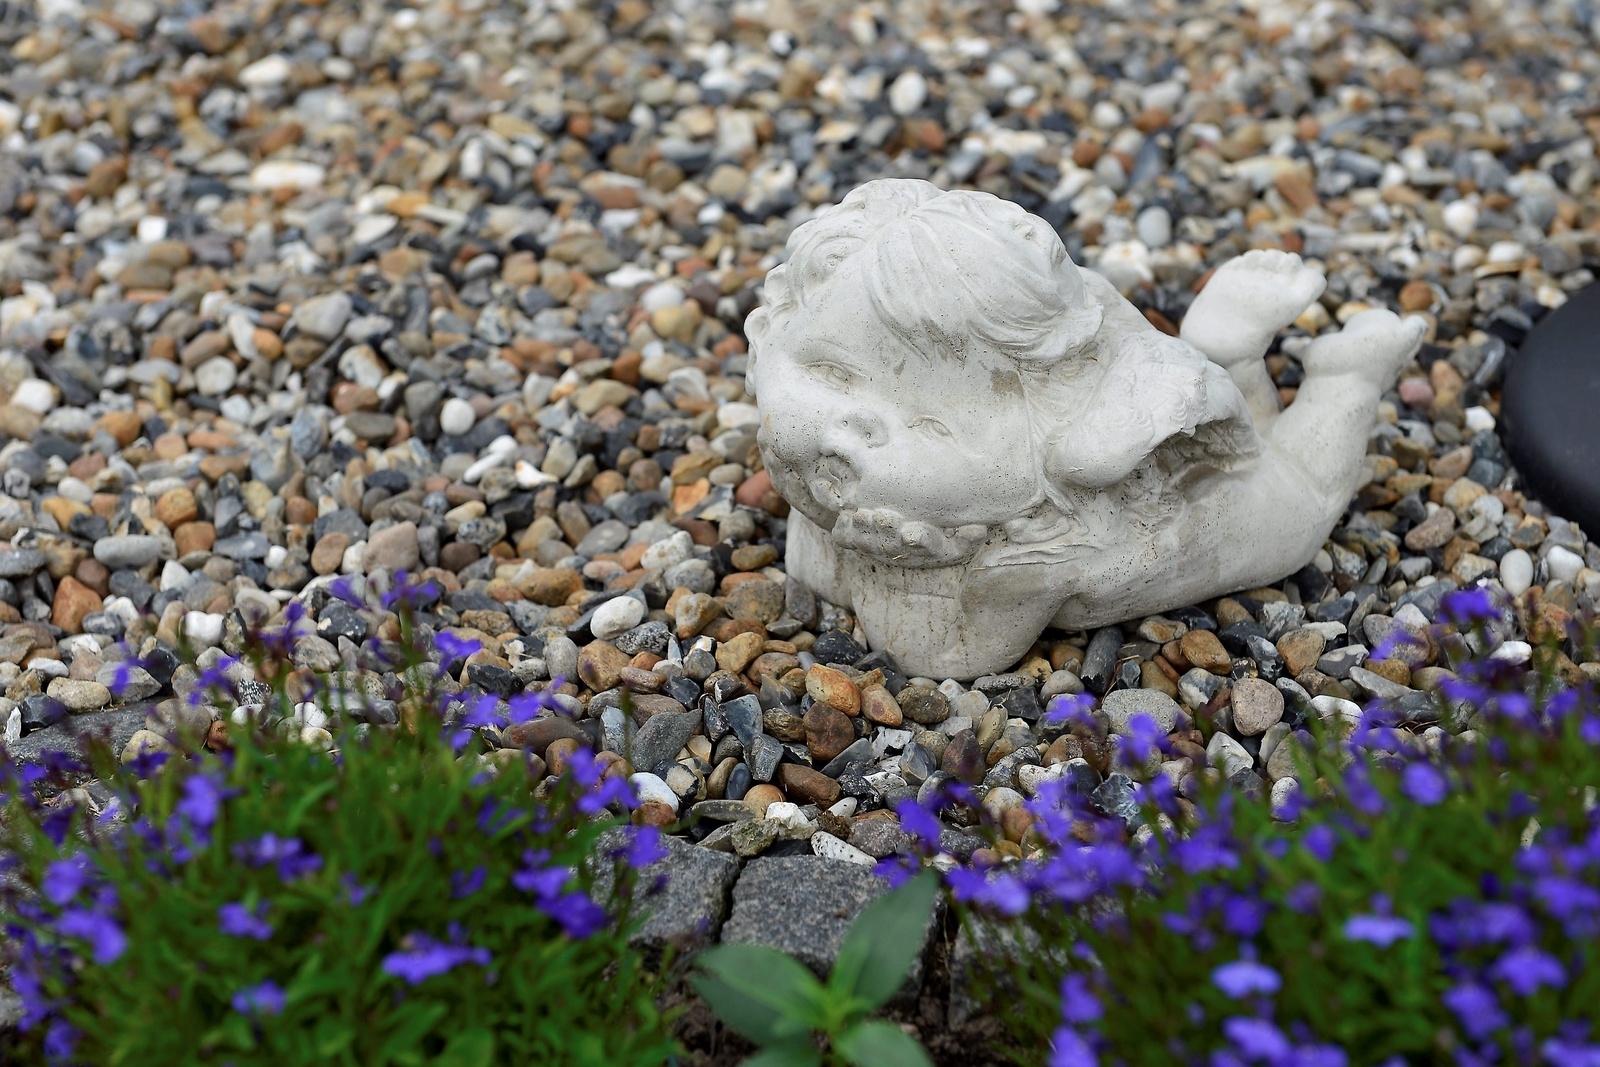 Ett av Ann-Christine Johanssons fritidsintressen är att gjuta  i betong, den här lilla ängeln vaktar i hennes trädgård.